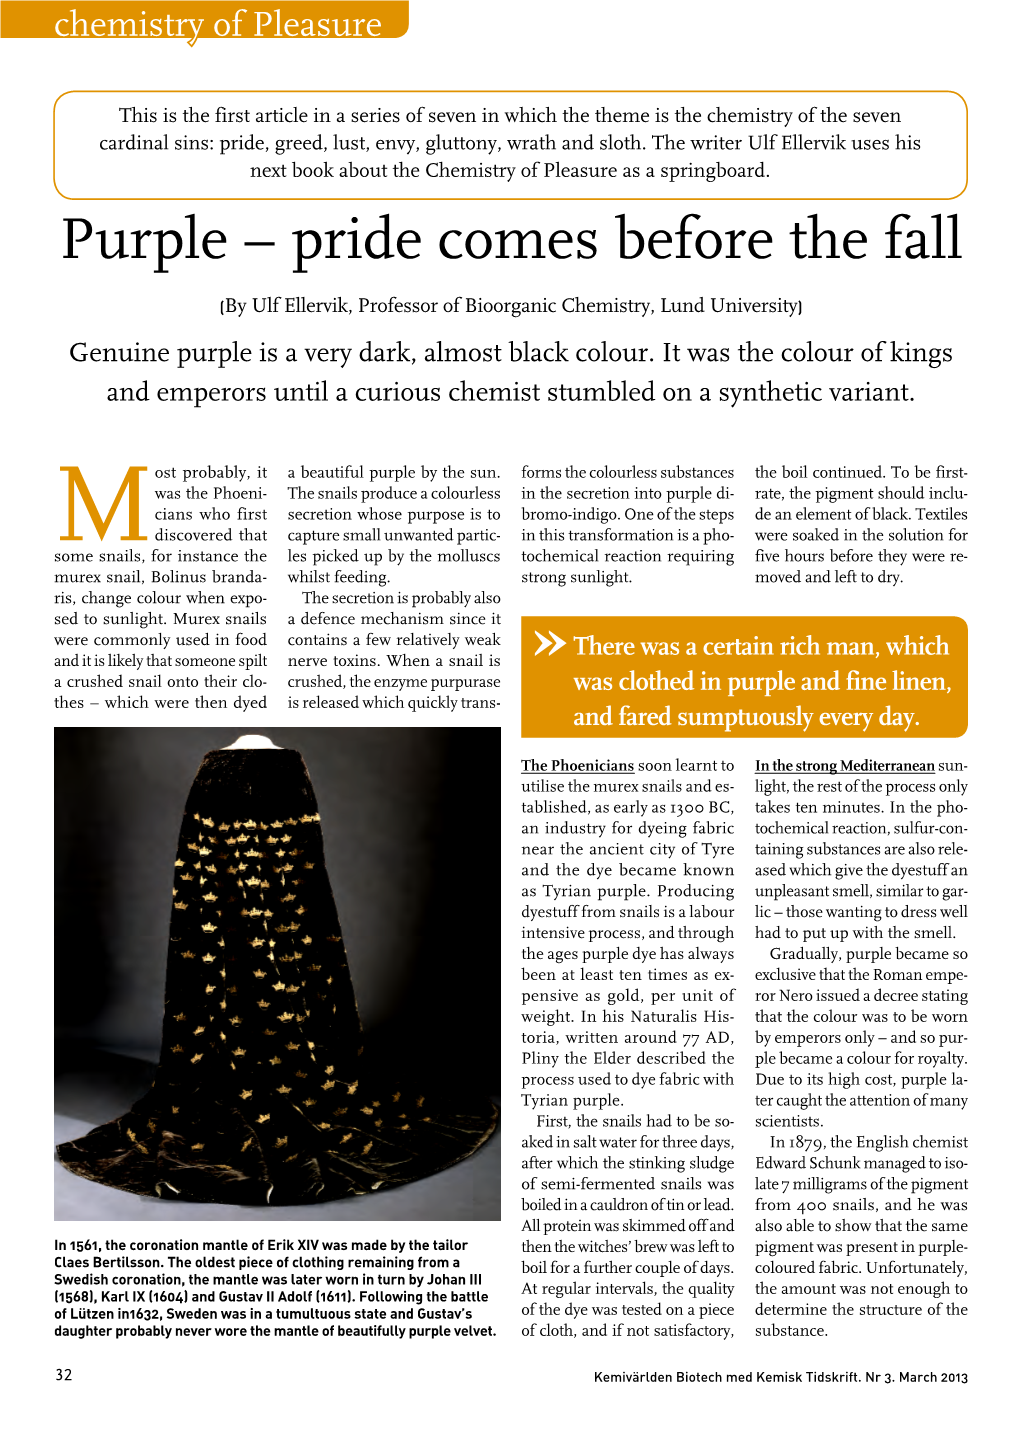 Purple – Pride Comes Before the Fall